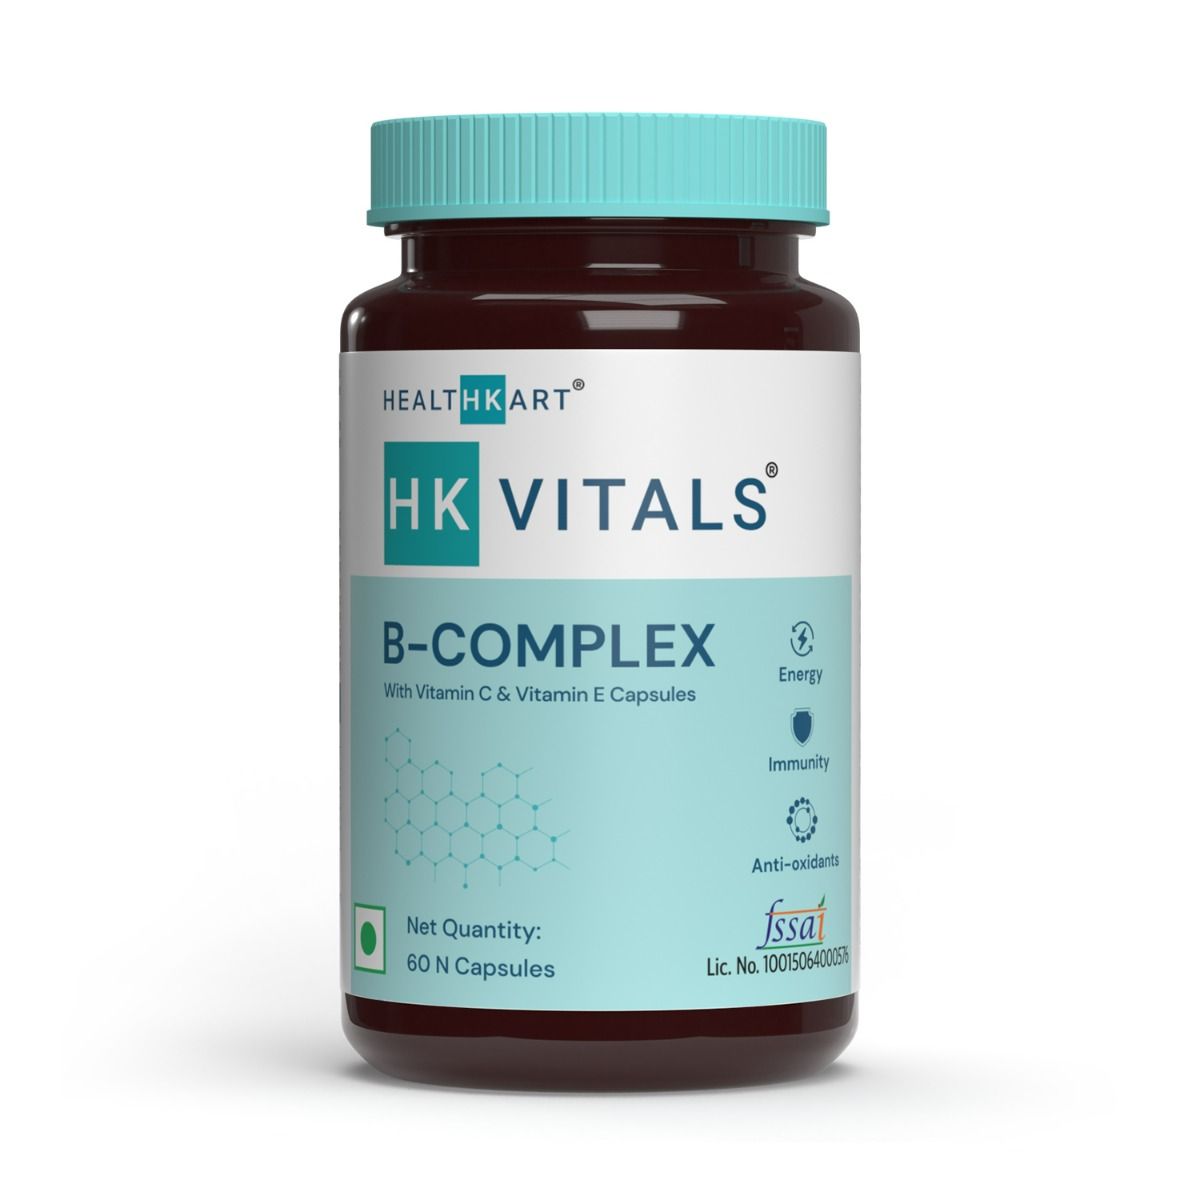 Buy HealthKart HK Vitals B-Complex with Vitamin C & Vitamin E, 60 Capsules Online